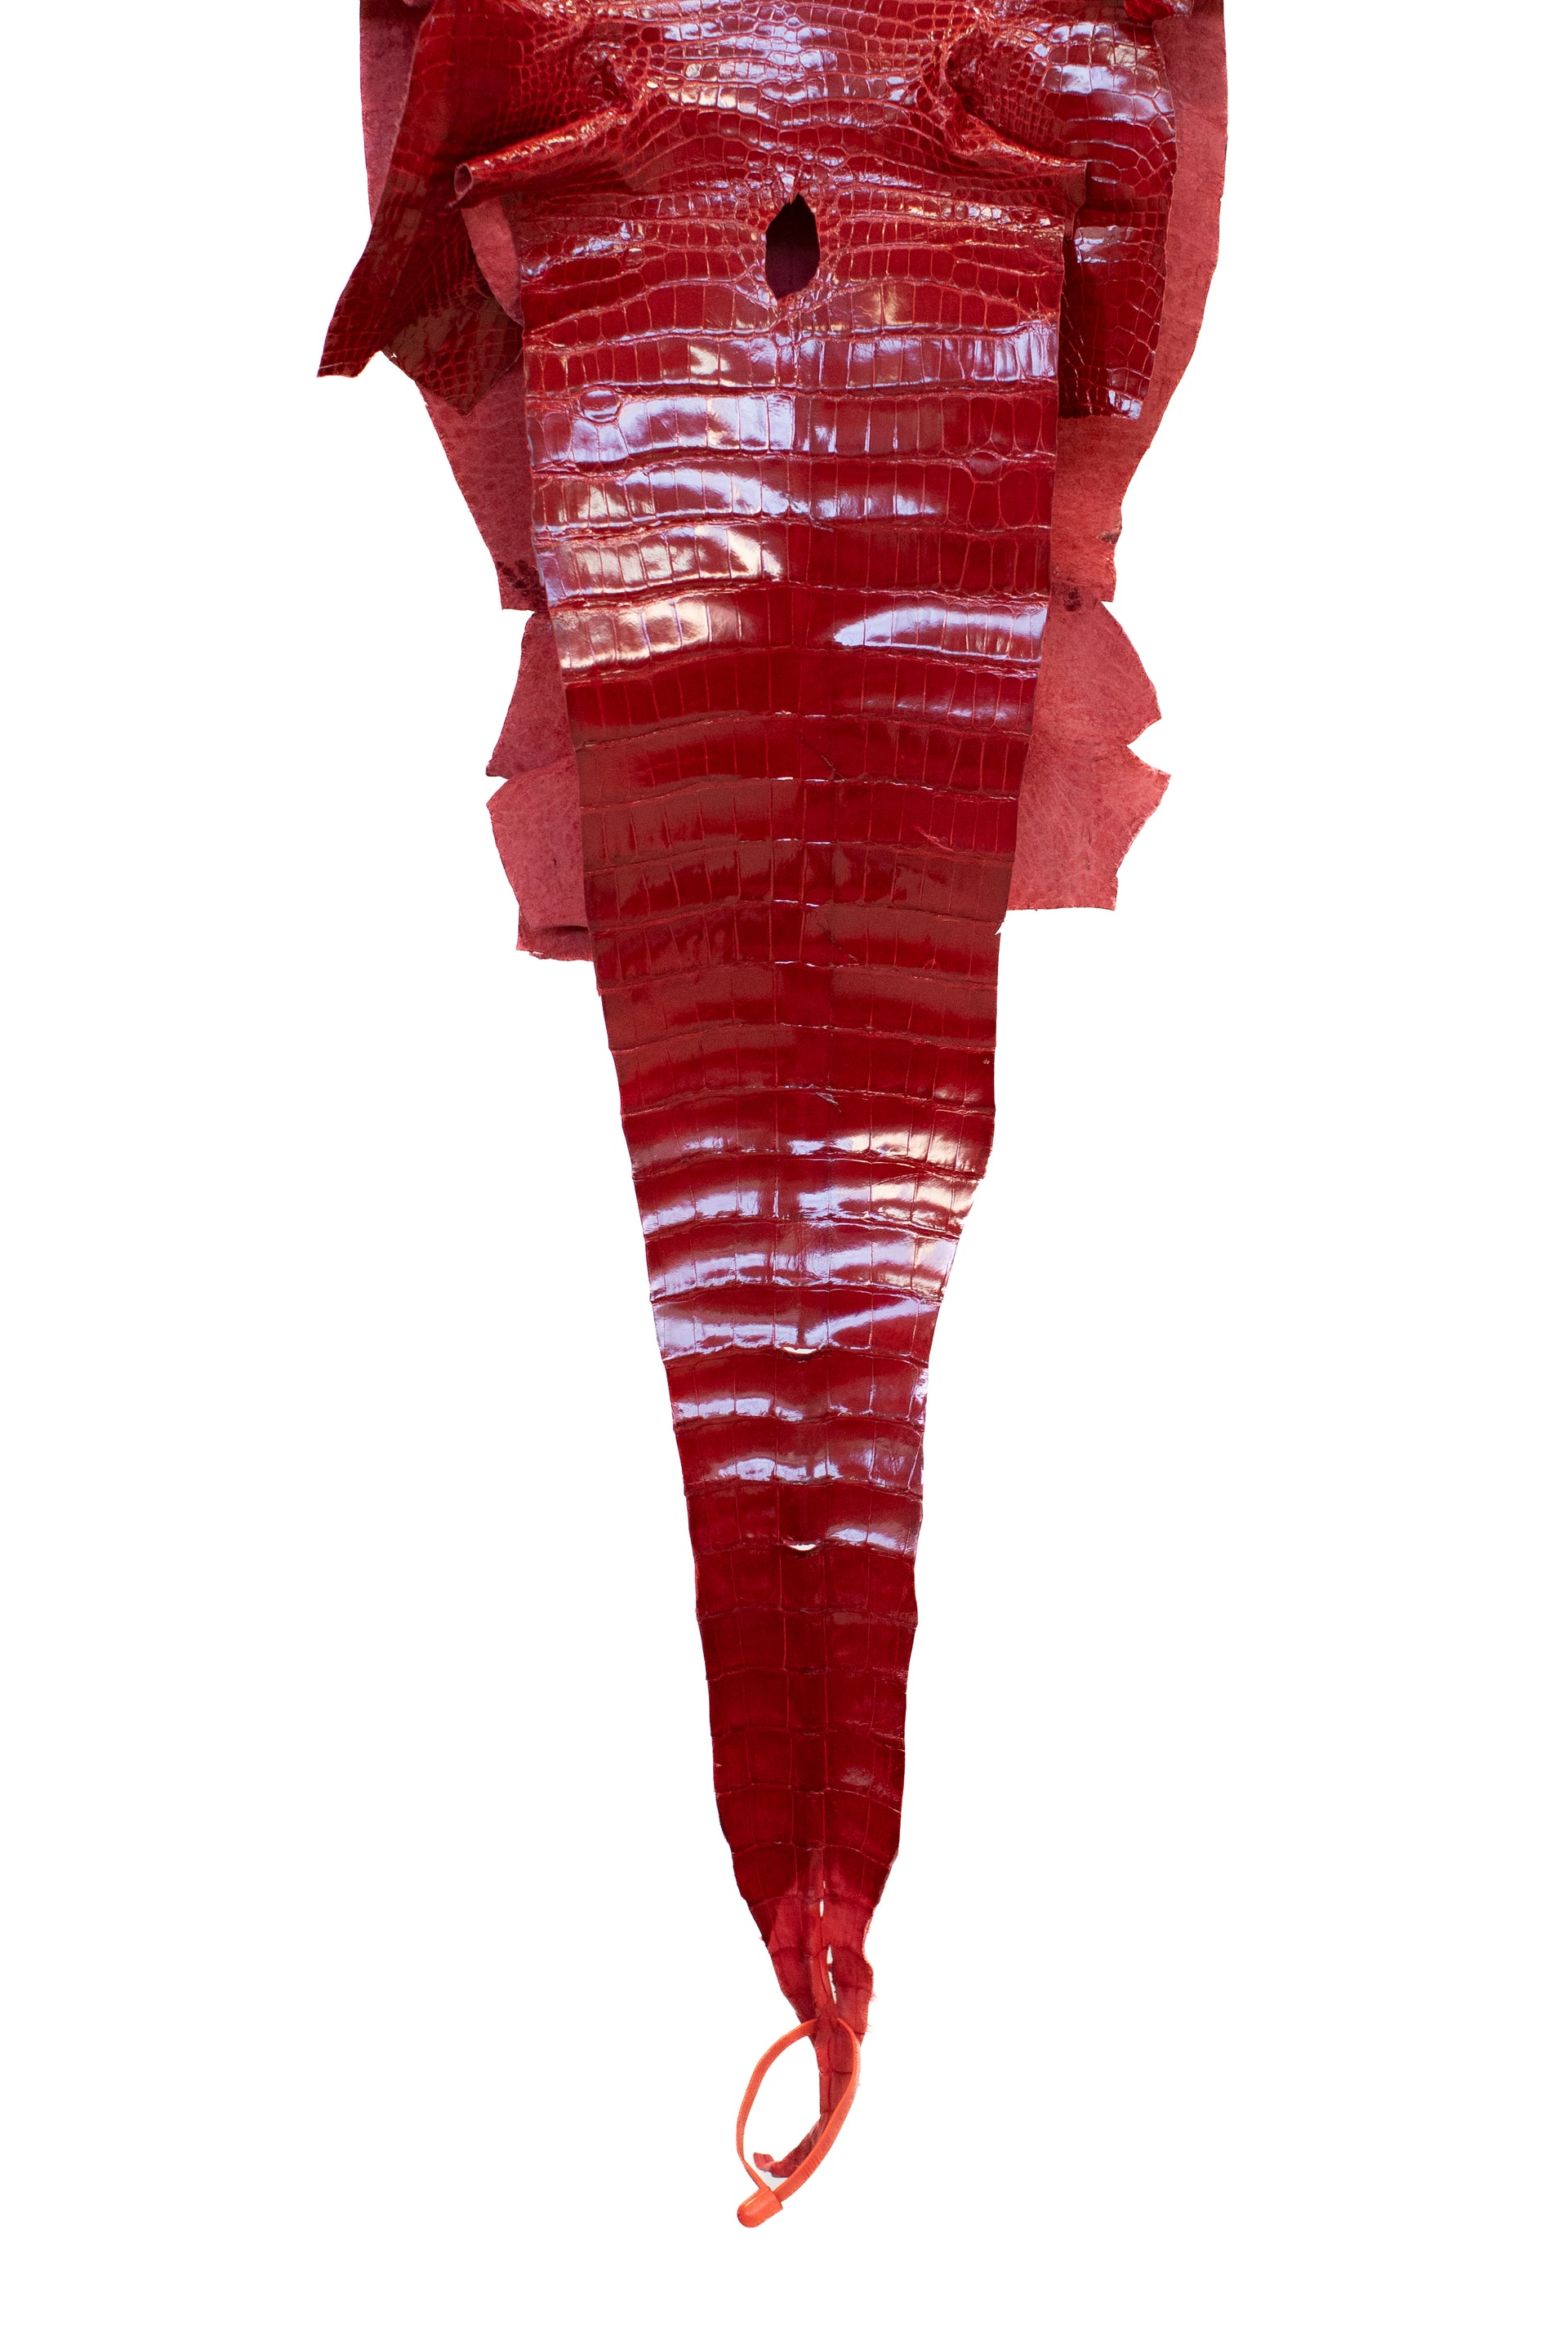 31 cm Grade 1 Red Glazed Wild American Alligator Leather - Tag: LA16-0037588